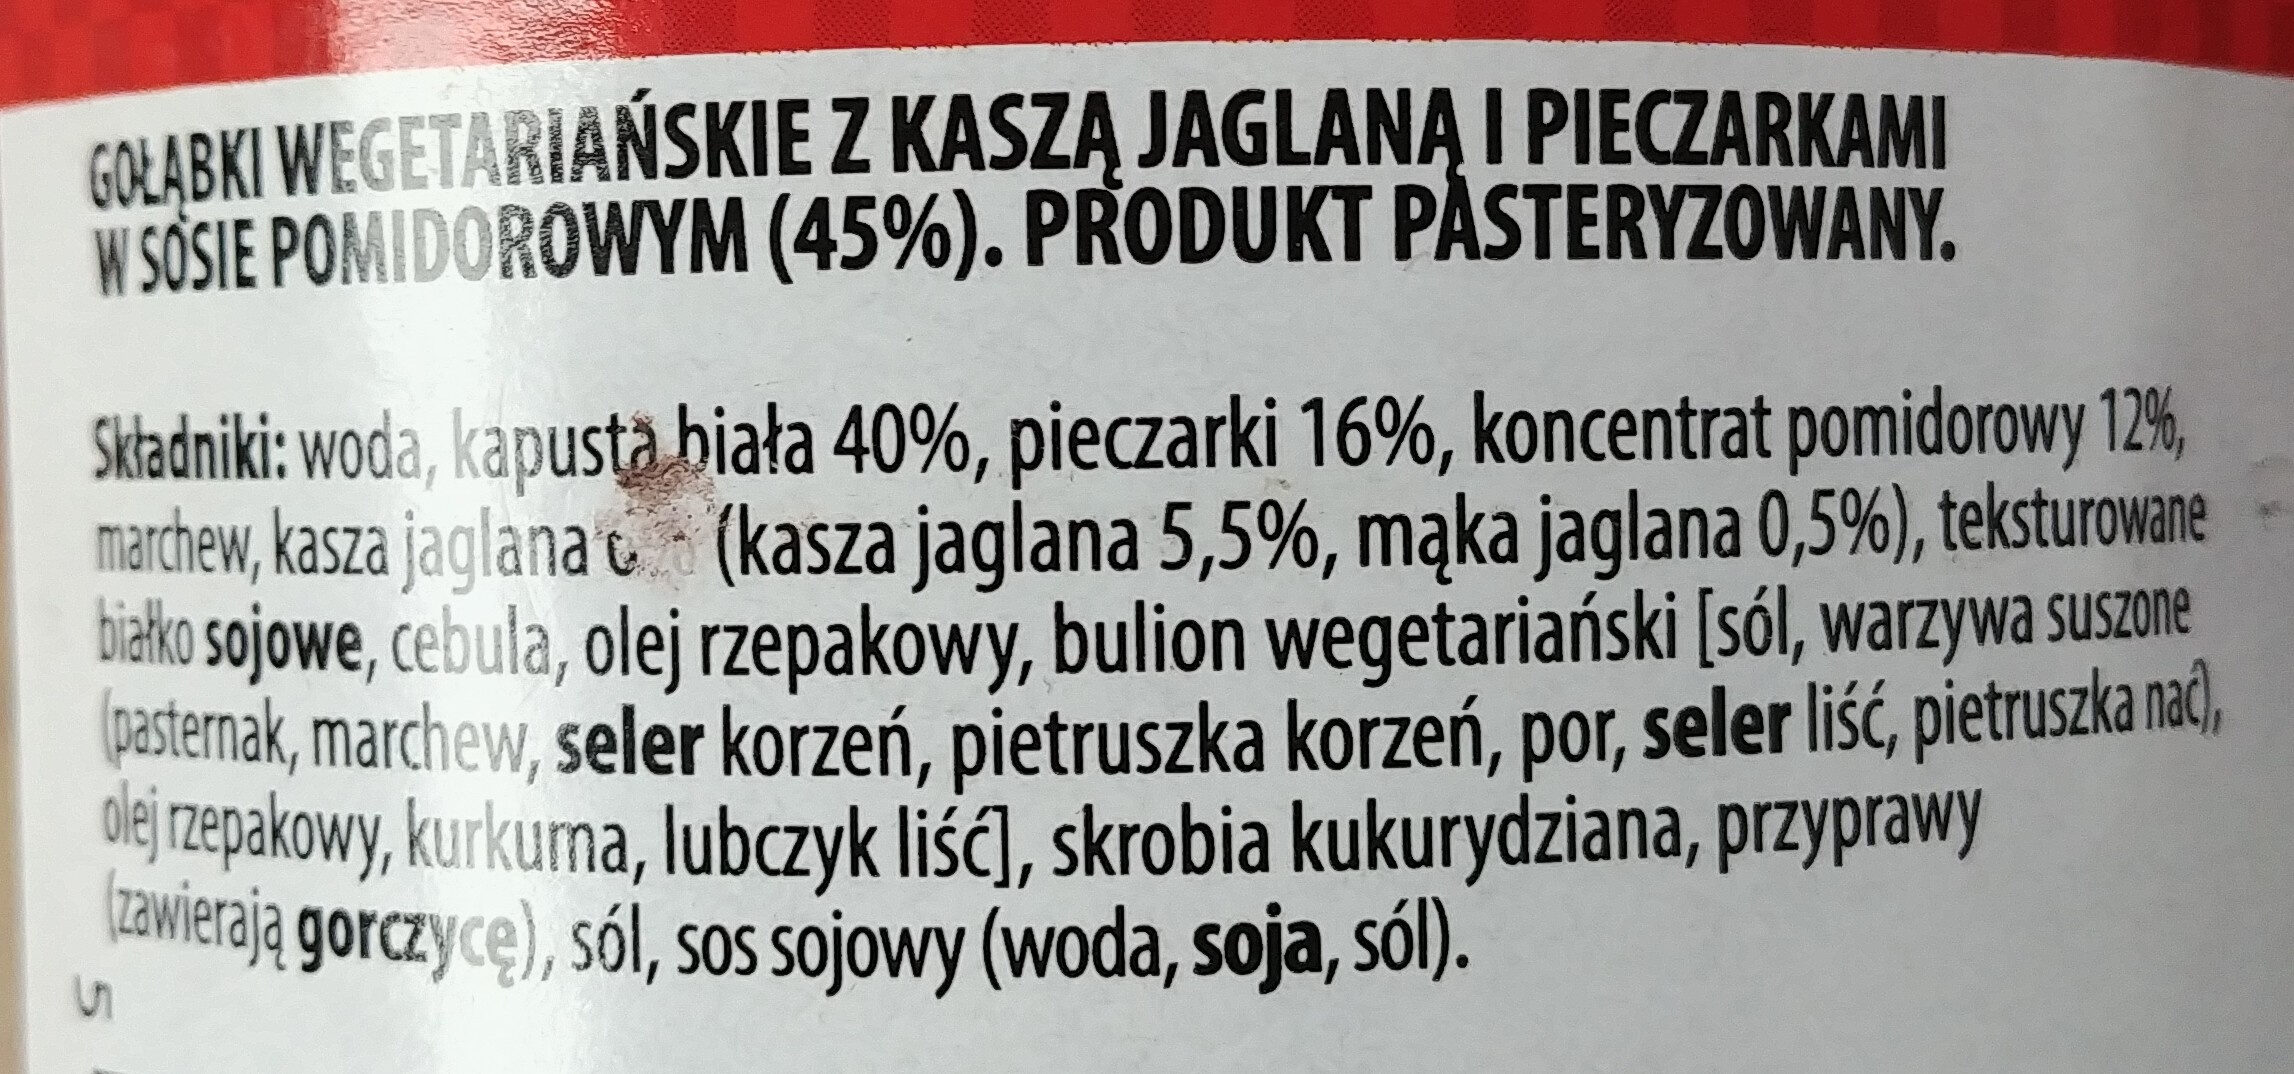 Gołąbki wegetariańskie z kaszą jaglaną - Ingrédients - pl